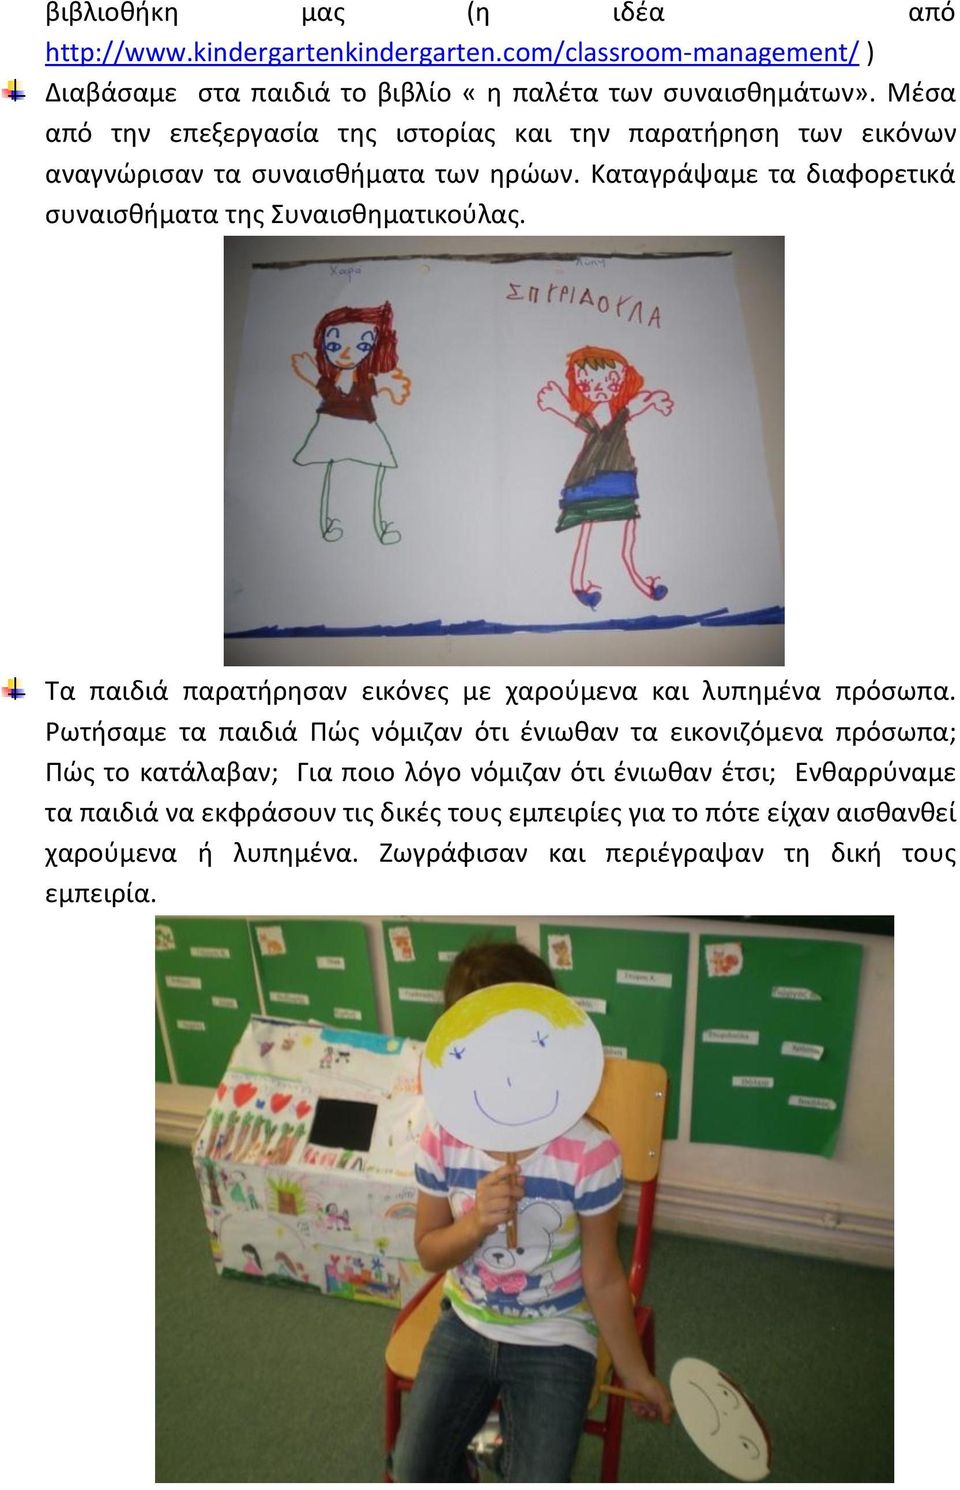 Καταγράψαμε τα διαφορετικά συναισθήματα της Συναισθηματικούλας. Τα παιδιά παρατήρησαν εικόνες με χαρούμενα και λυπημένα πρόσωπα.